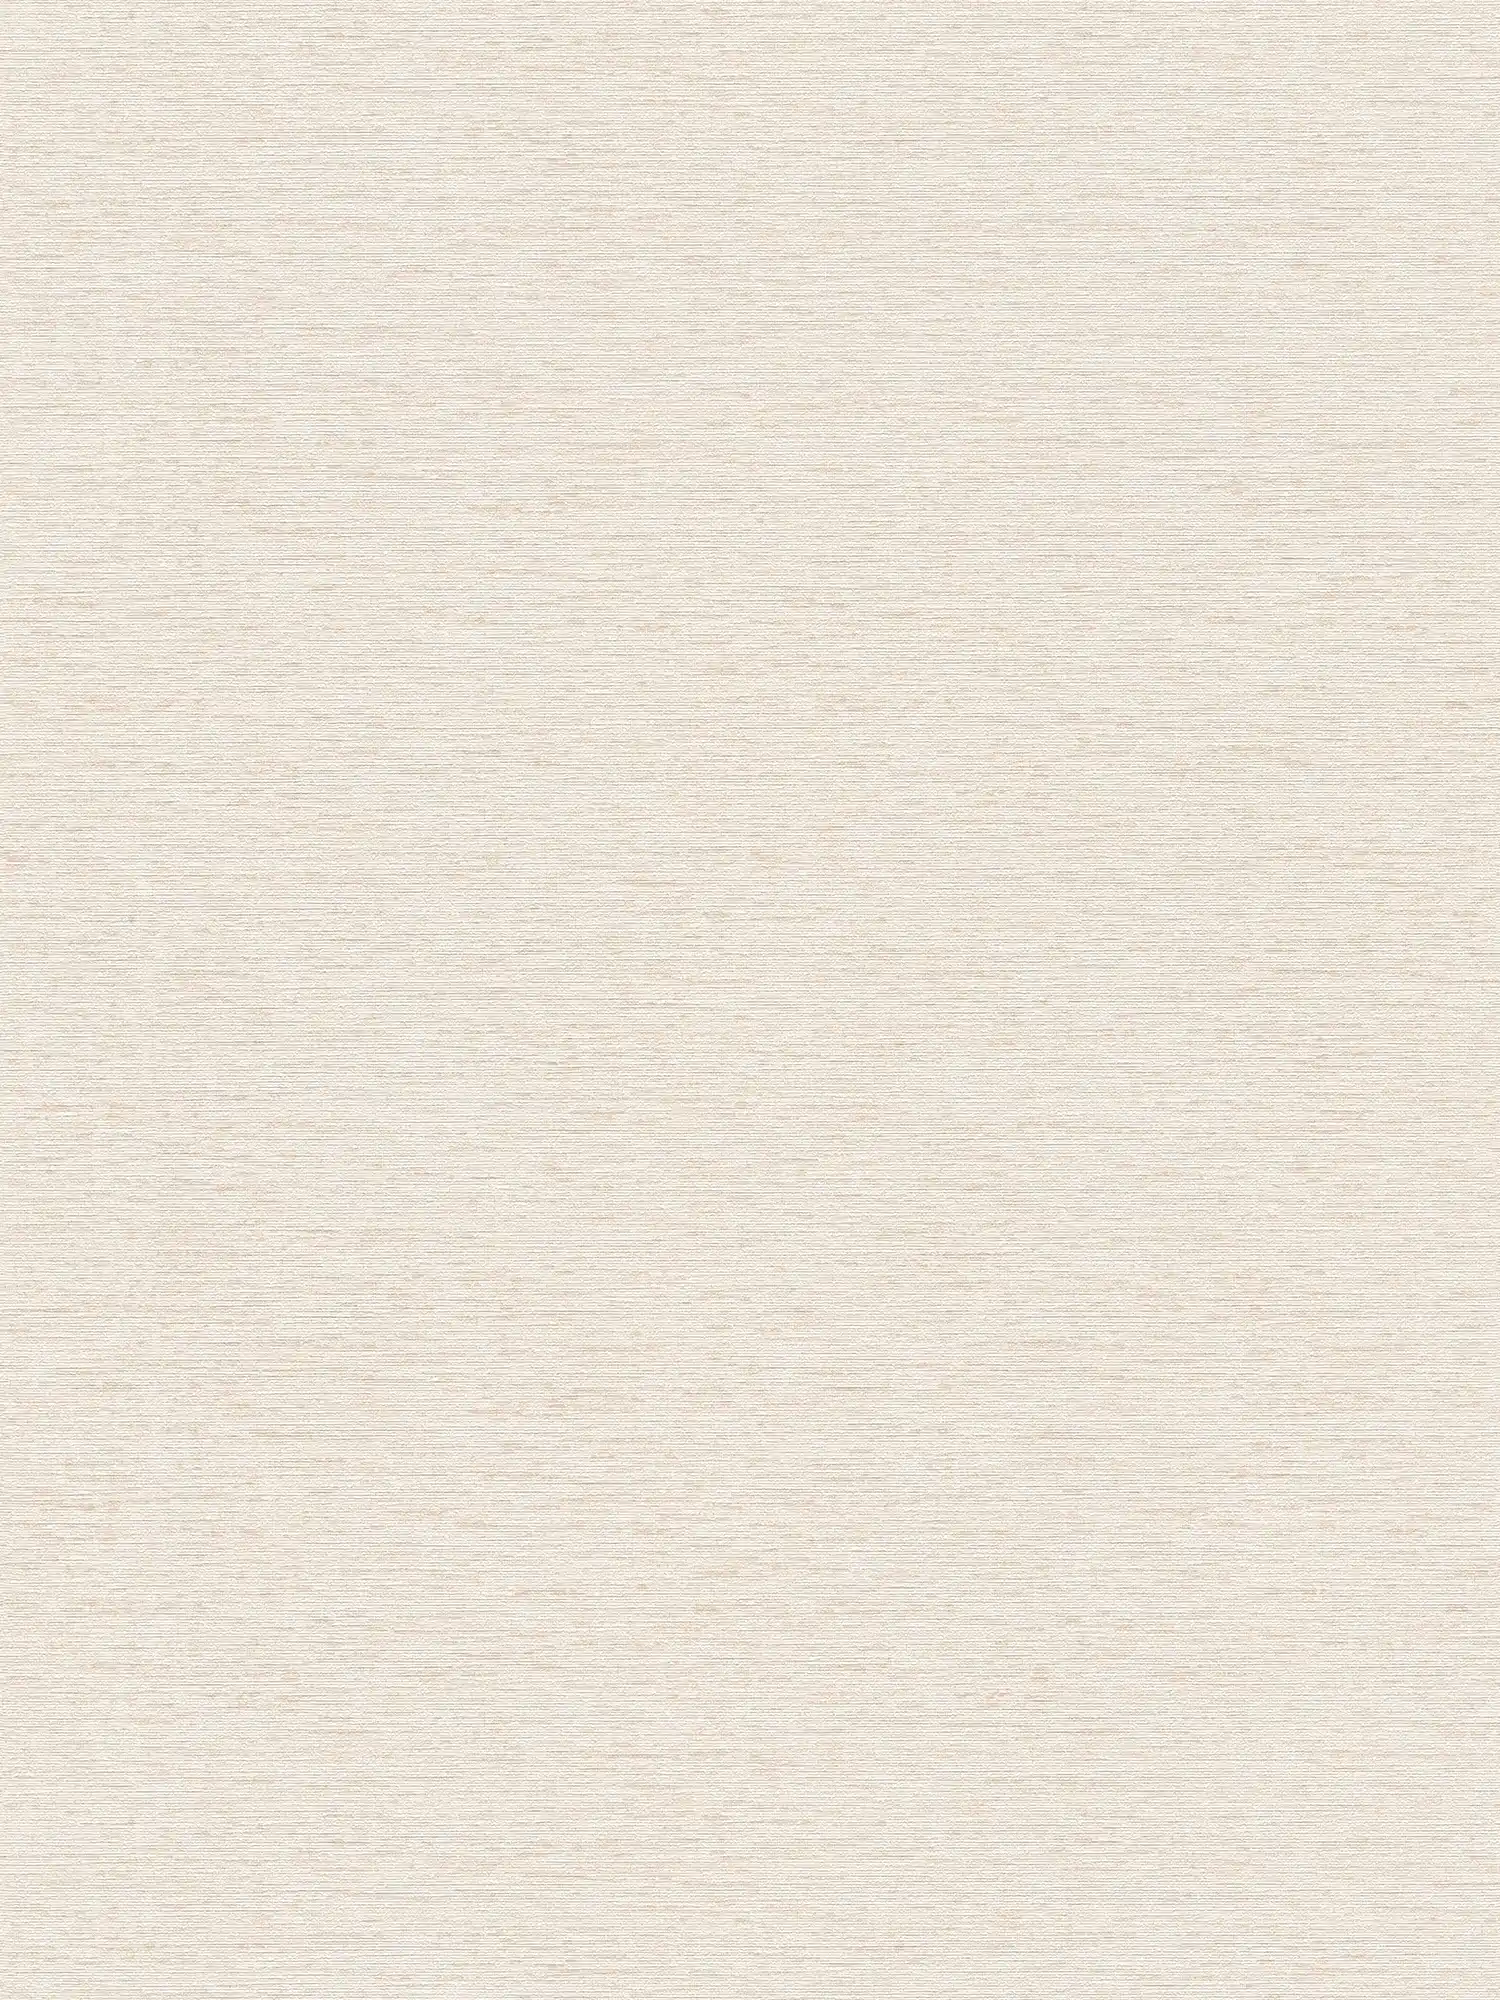 papier peint en papier uni avec structure tissée, mat - crème, blanc, beige
